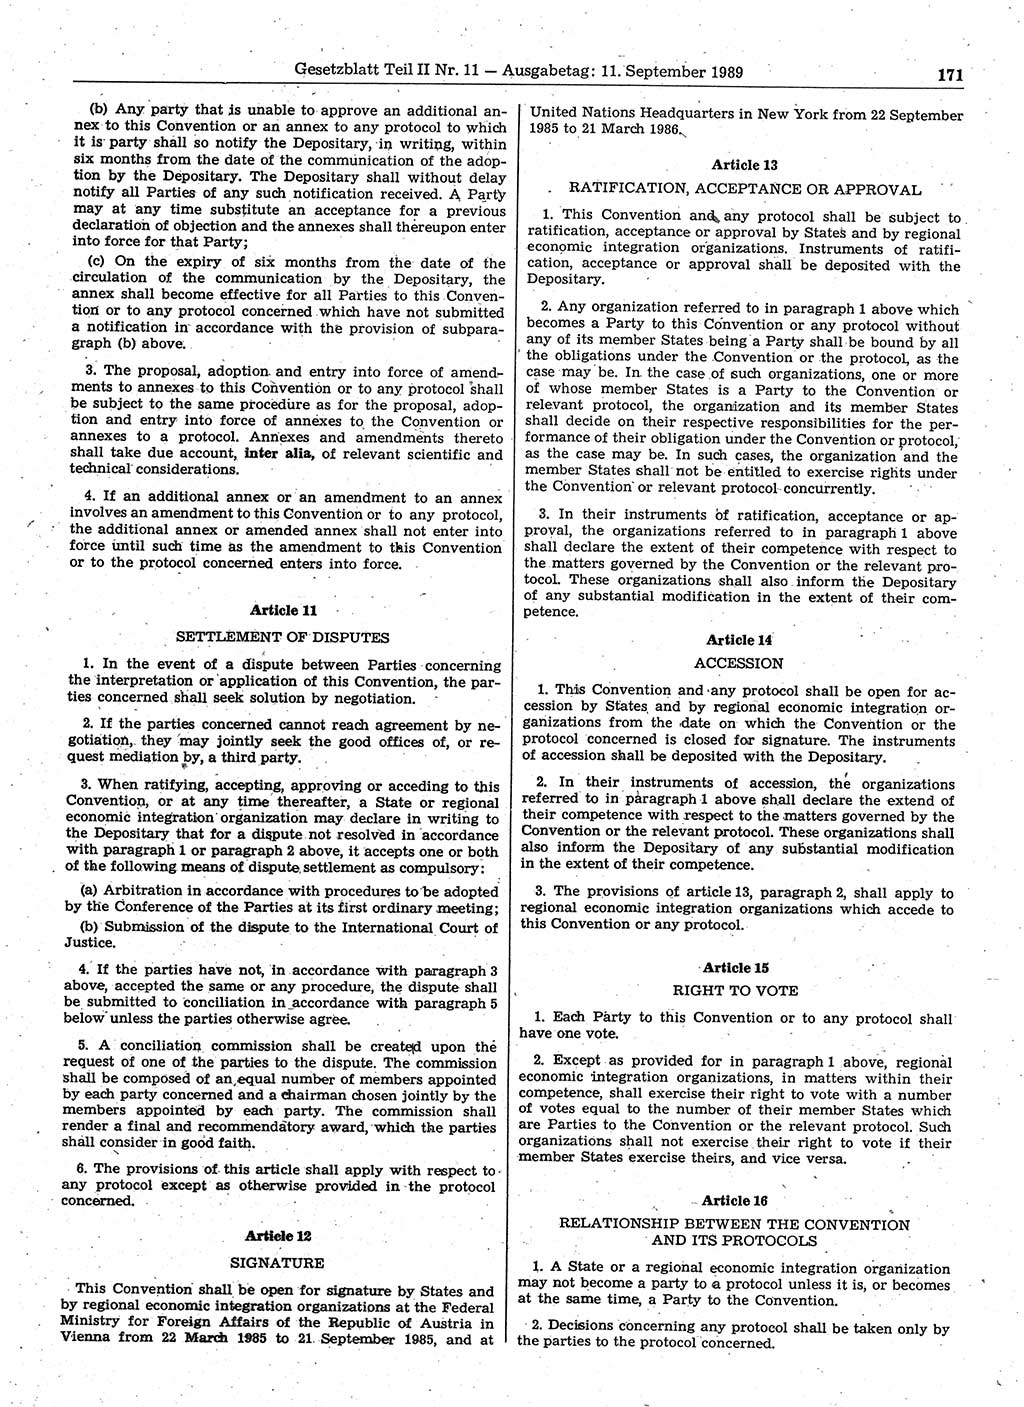 Gesetzblatt (GBl.) der Deutschen Demokratischen Republik (DDR) Teil ⅠⅠ 1989, Seite 171 (GBl. DDR ⅠⅠ 1989, S. 171)